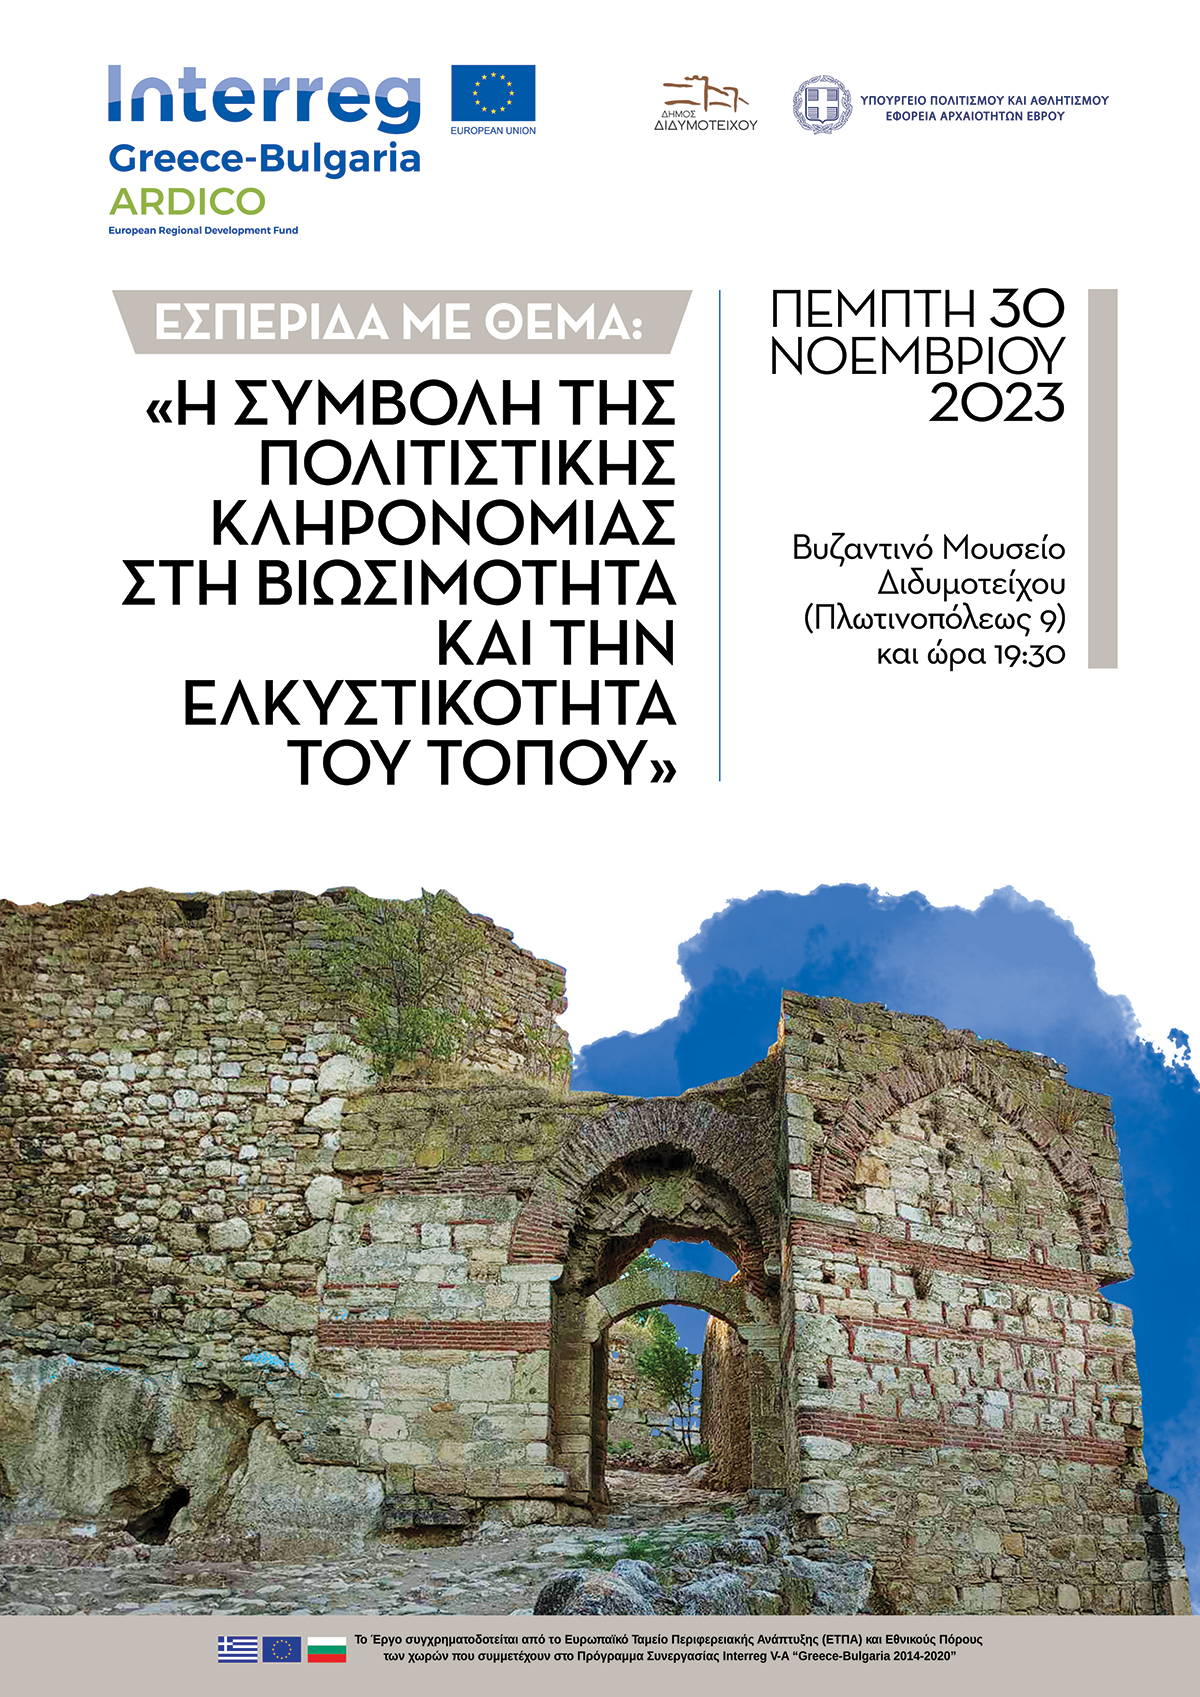 Εκδήλωση στο Διδυμότειχο με θέμα “Η συμβολή της πολιτιστικής κληρονομιάς στη βιωσιμότητα και την ελκυστικότητα του τόπου» στα πλαίσια του προγράμματος Interreg Ελλάδος – Βουλγαρίας